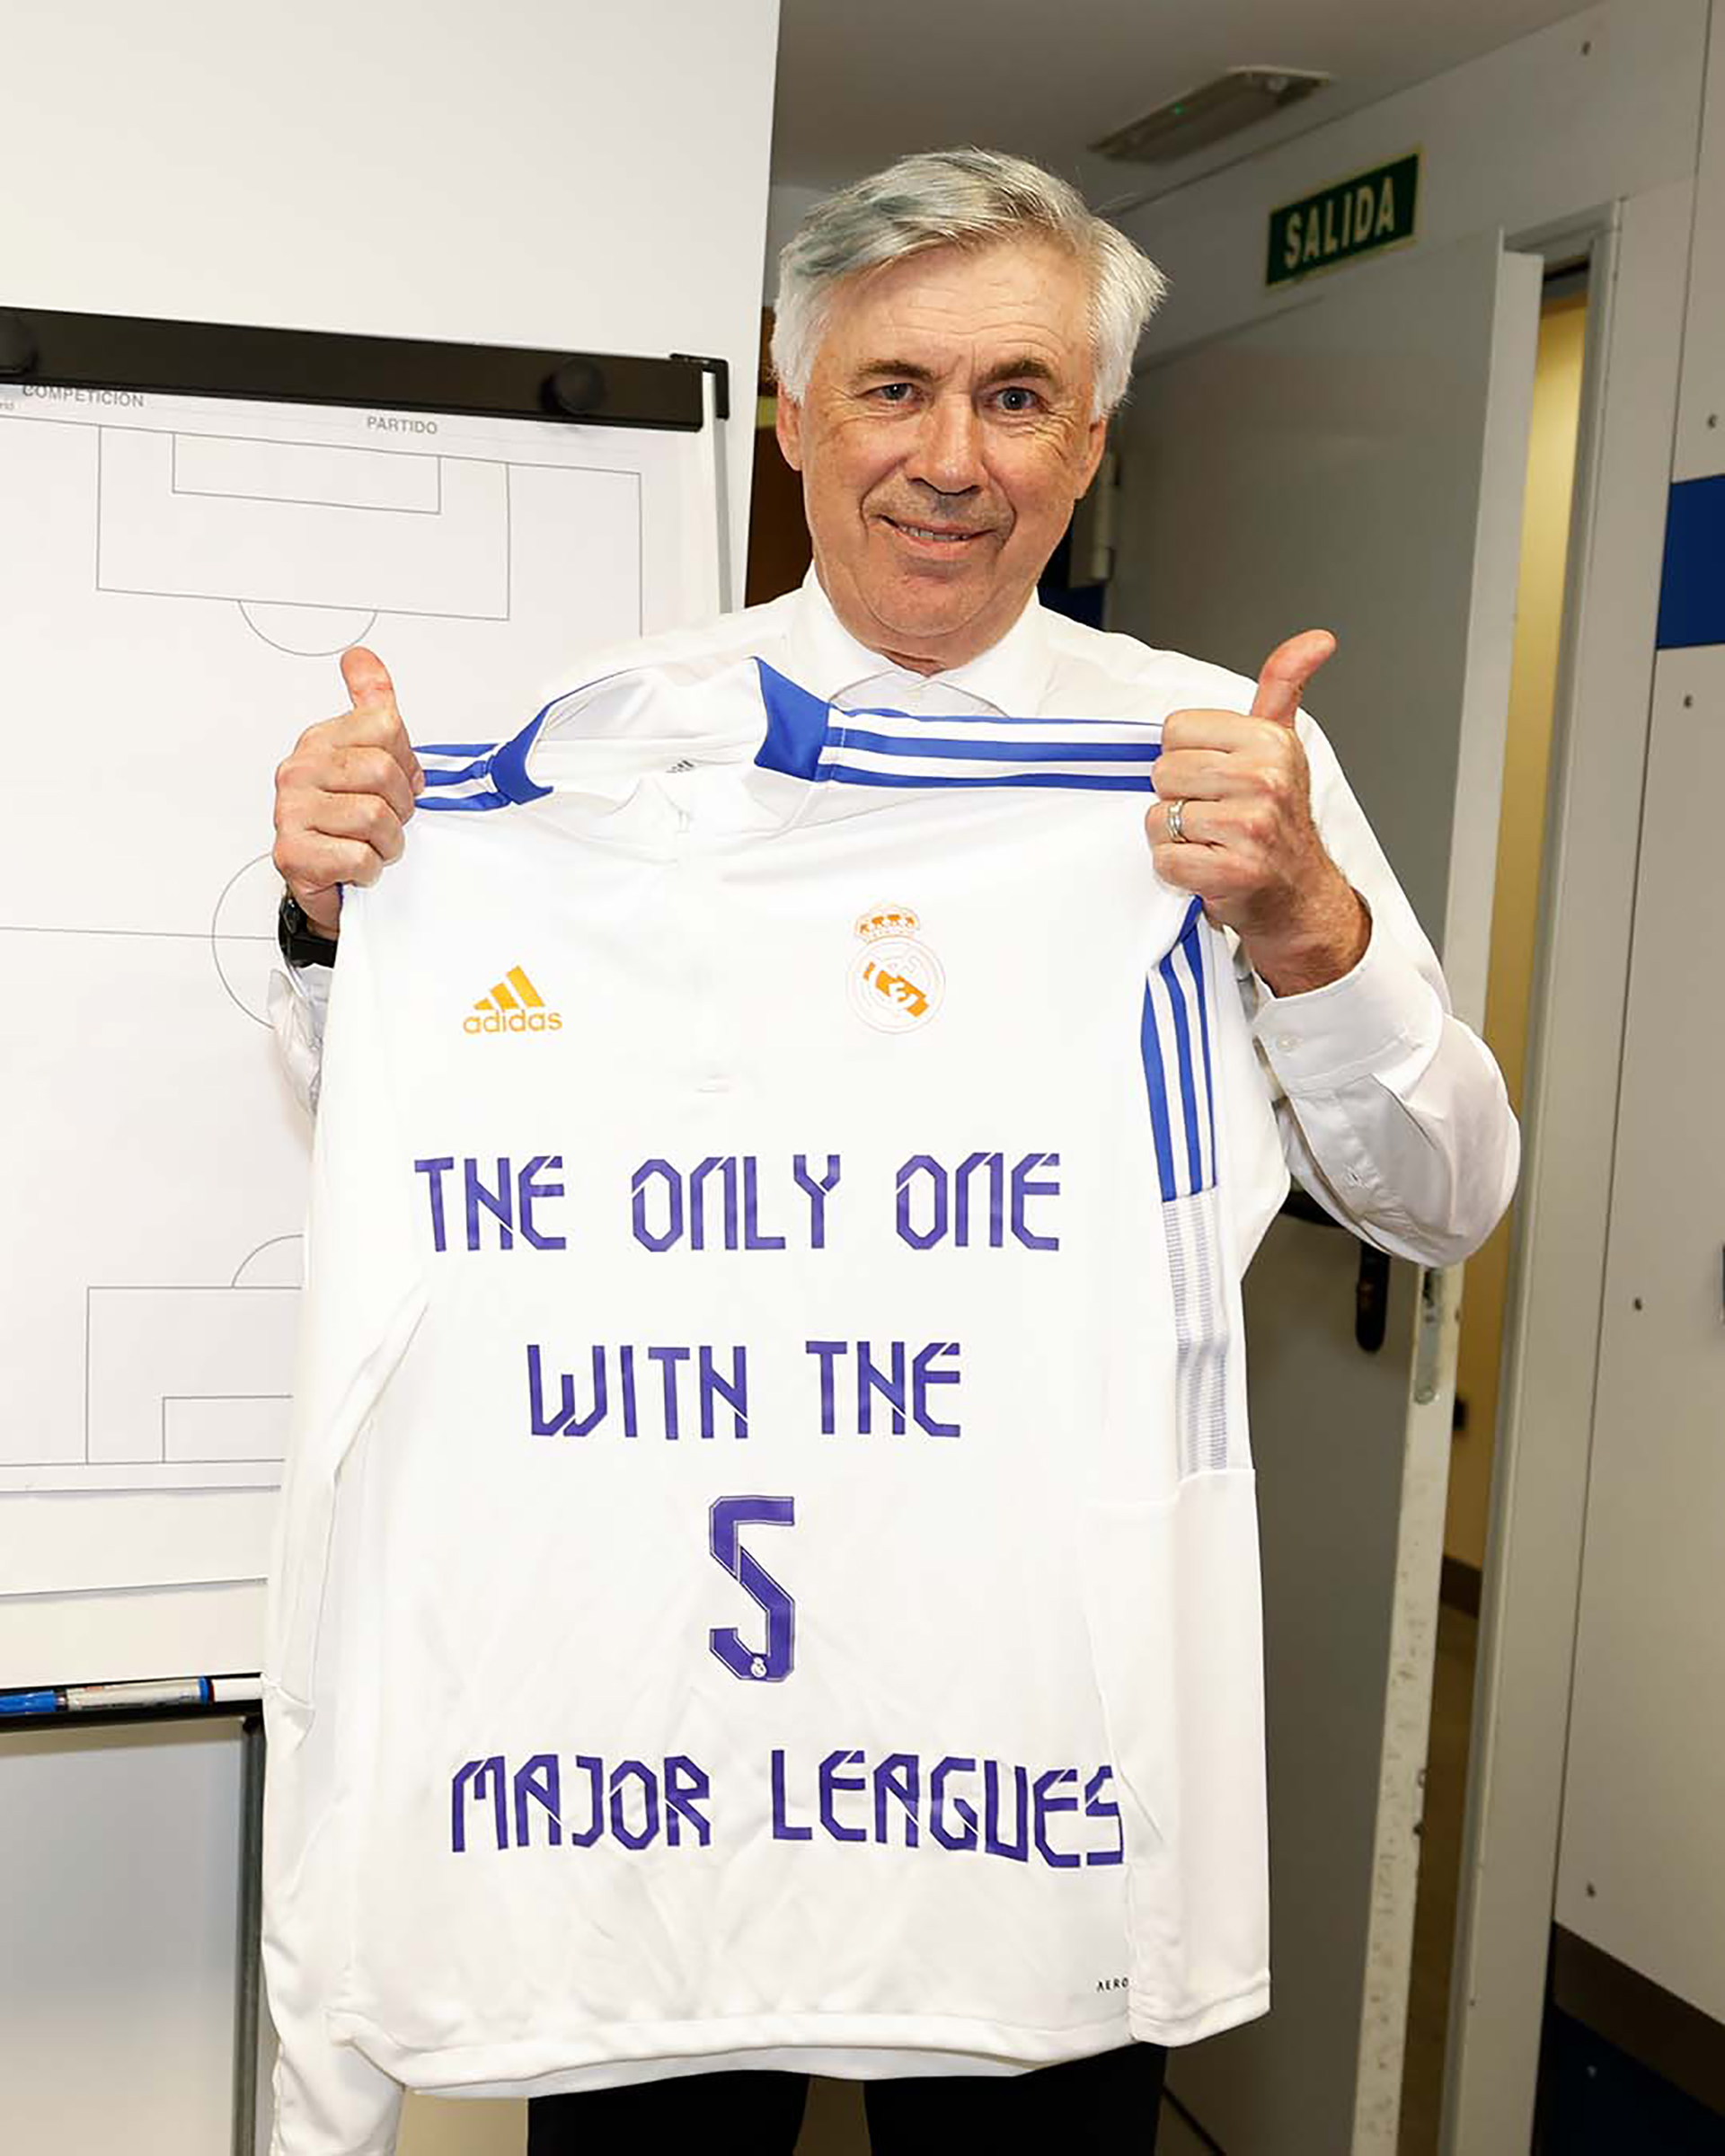 "El único con las 5 grandes ligas", reza la inscripción de la remera de Ancelotti (@realmadrid)